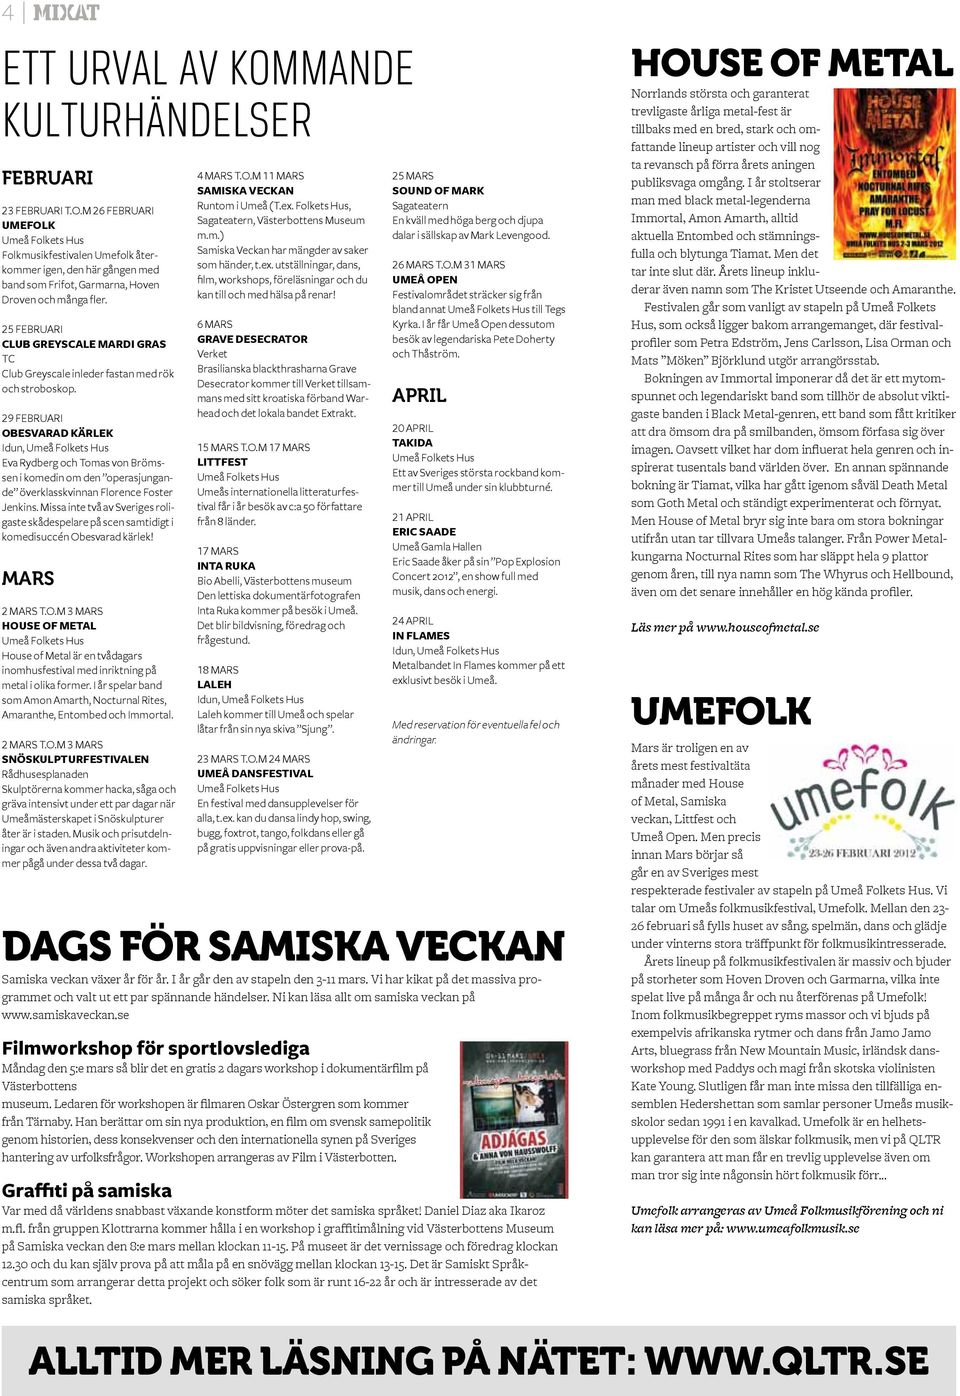 29 FEBRUARI OBESVARAD KÄRLEK Idun, Umeå Folkets Hus Eva Rydberg och Tomas von Brömssen i komedin om den operasjungande överklasskvinnan Florence Foster Jenkins.